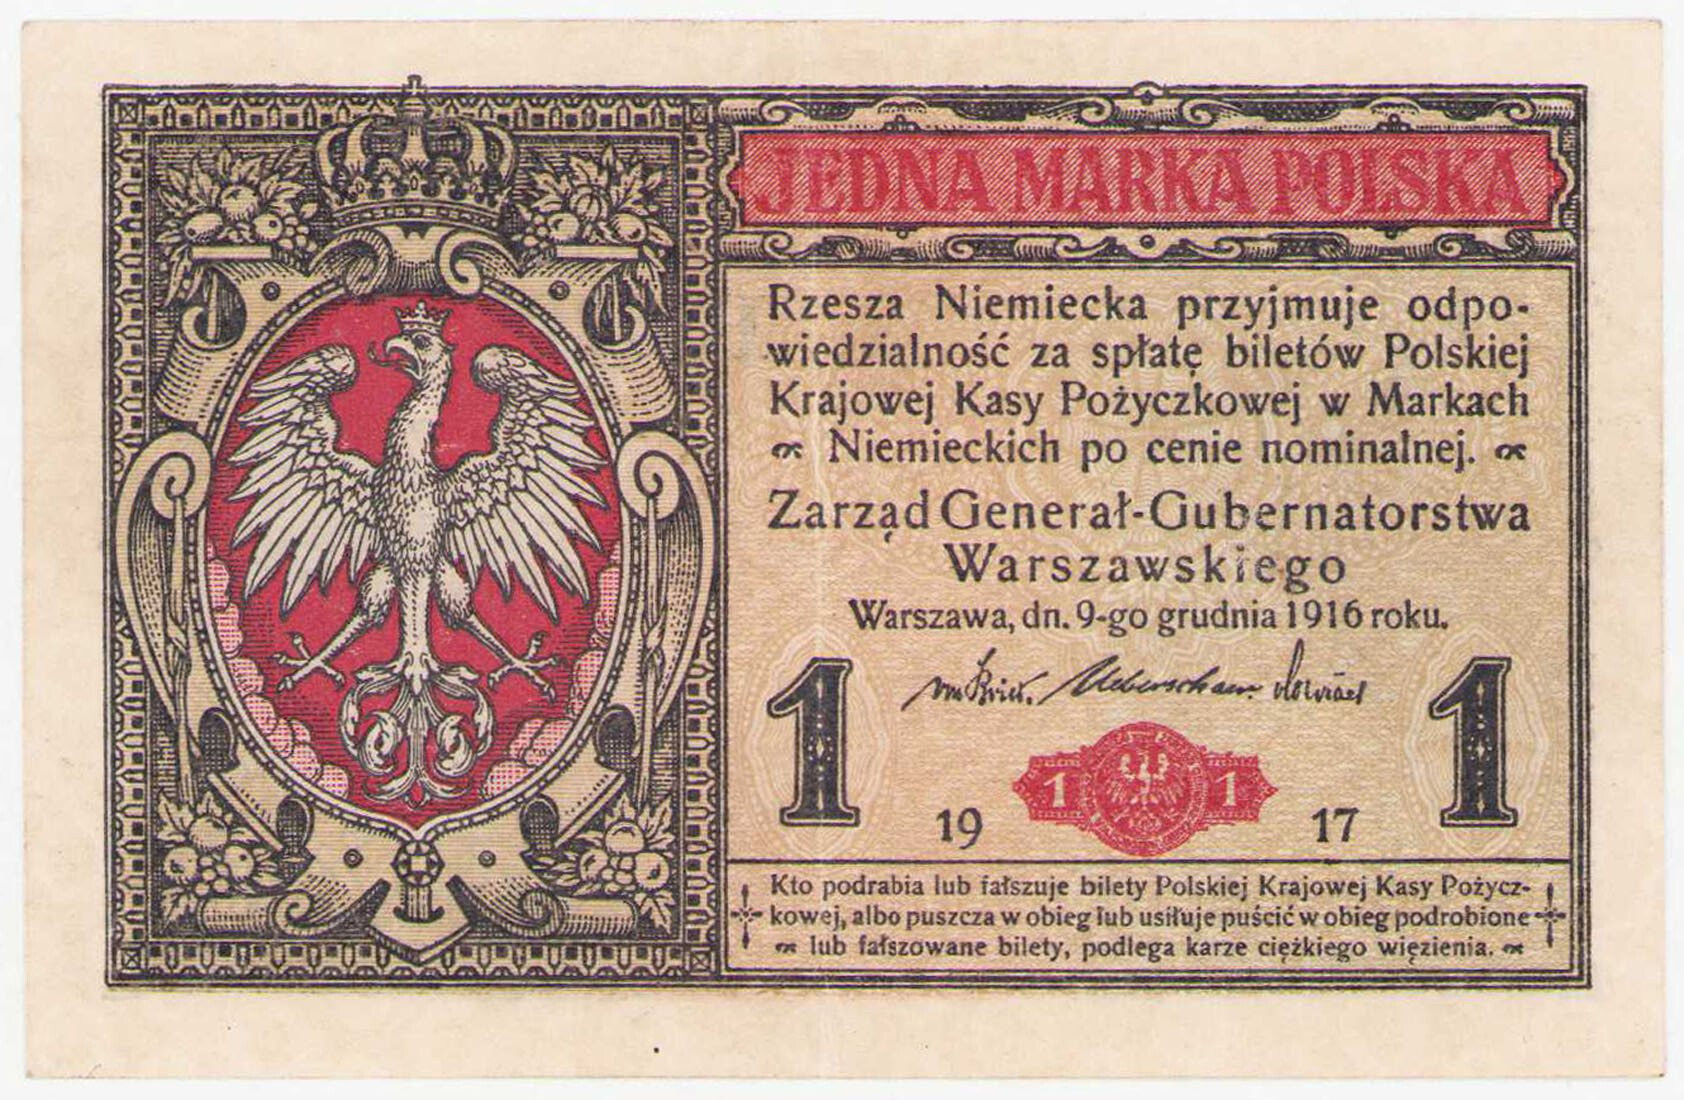 1 marka polska 1916 seria B – Generał